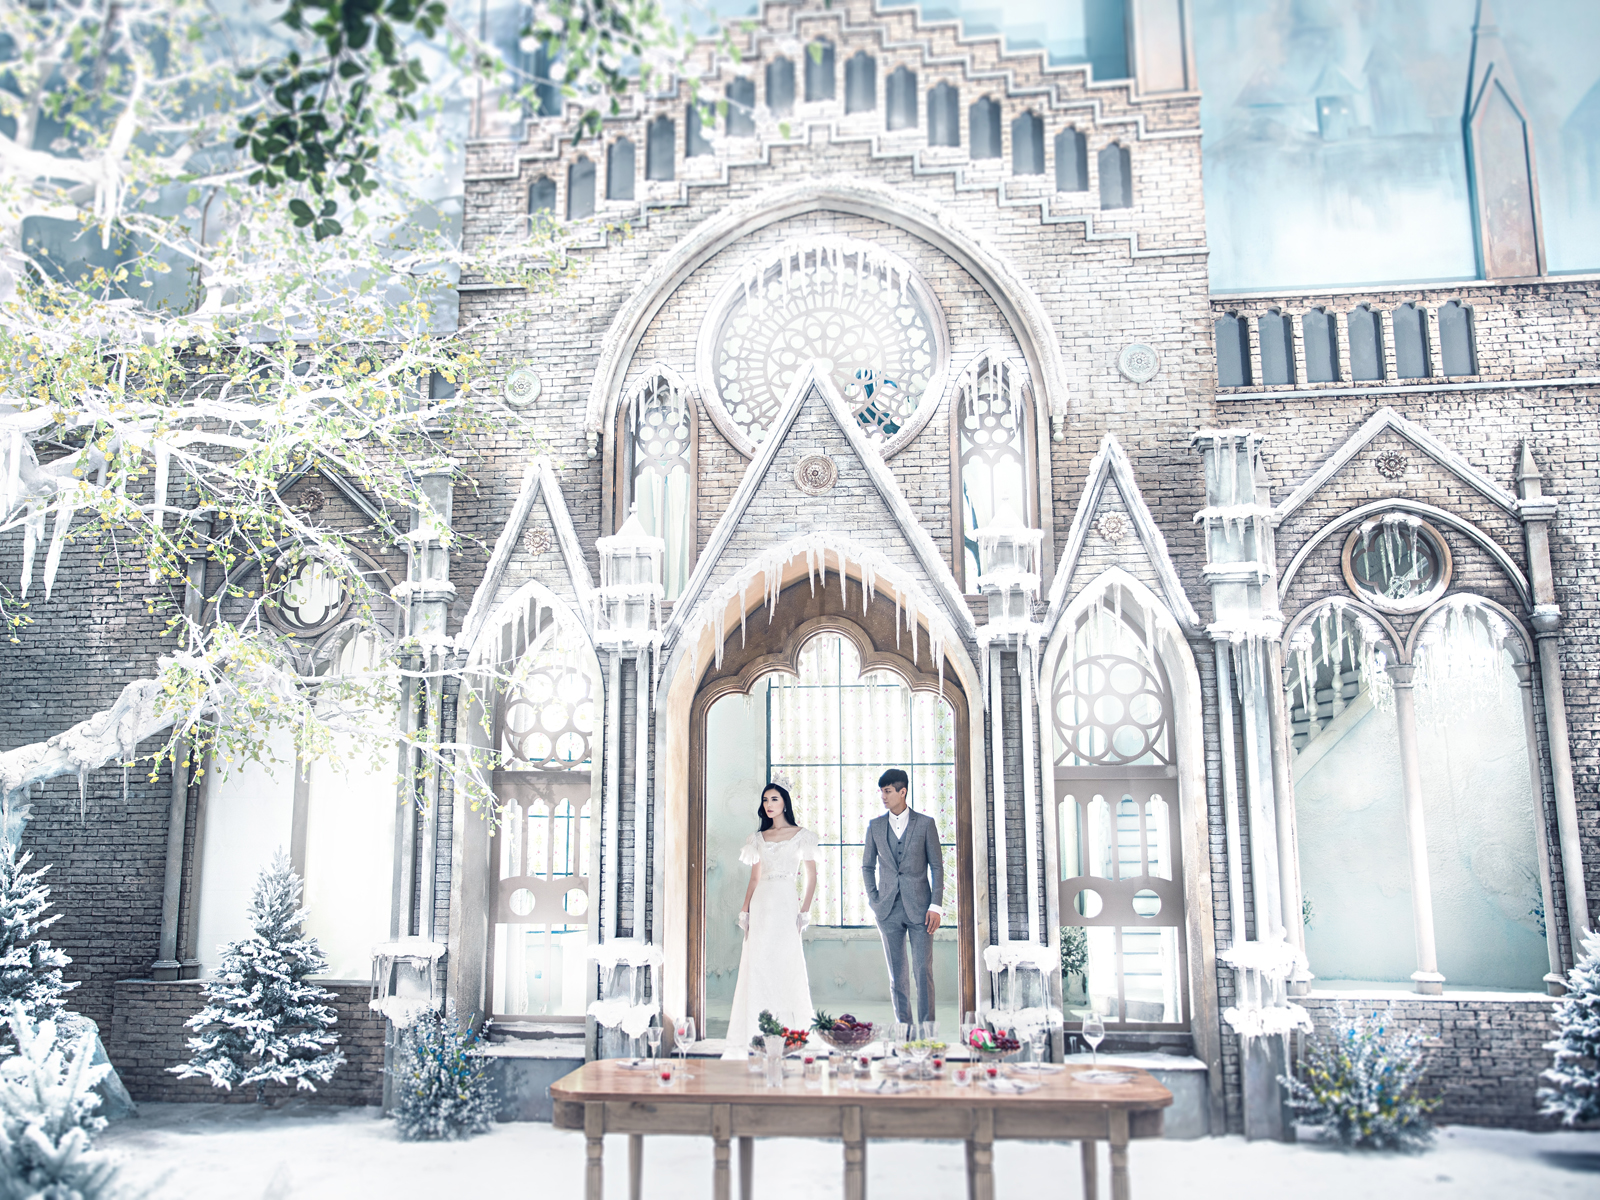 冰雪奇缘内景拍摄基地欧式宫殿城堡婚纱照